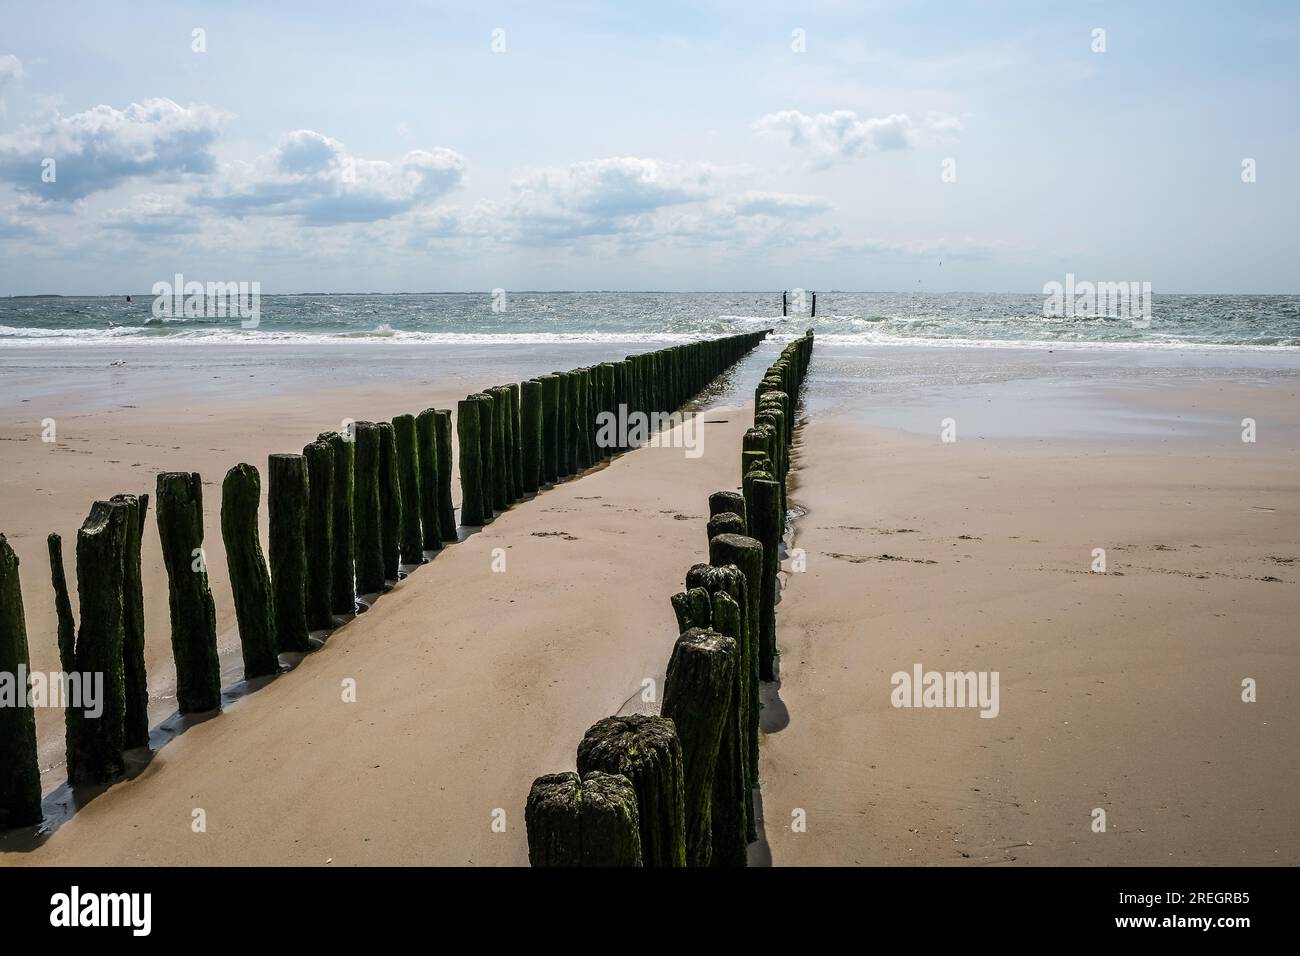 Vlissingen, Neuseeland, Niederlande - Sandstrand mit hölzernen Wellenbrechern, Hafenstadt an der Südküste der Halbinsel Walcheren in der niederländischen Provinz Stockfoto